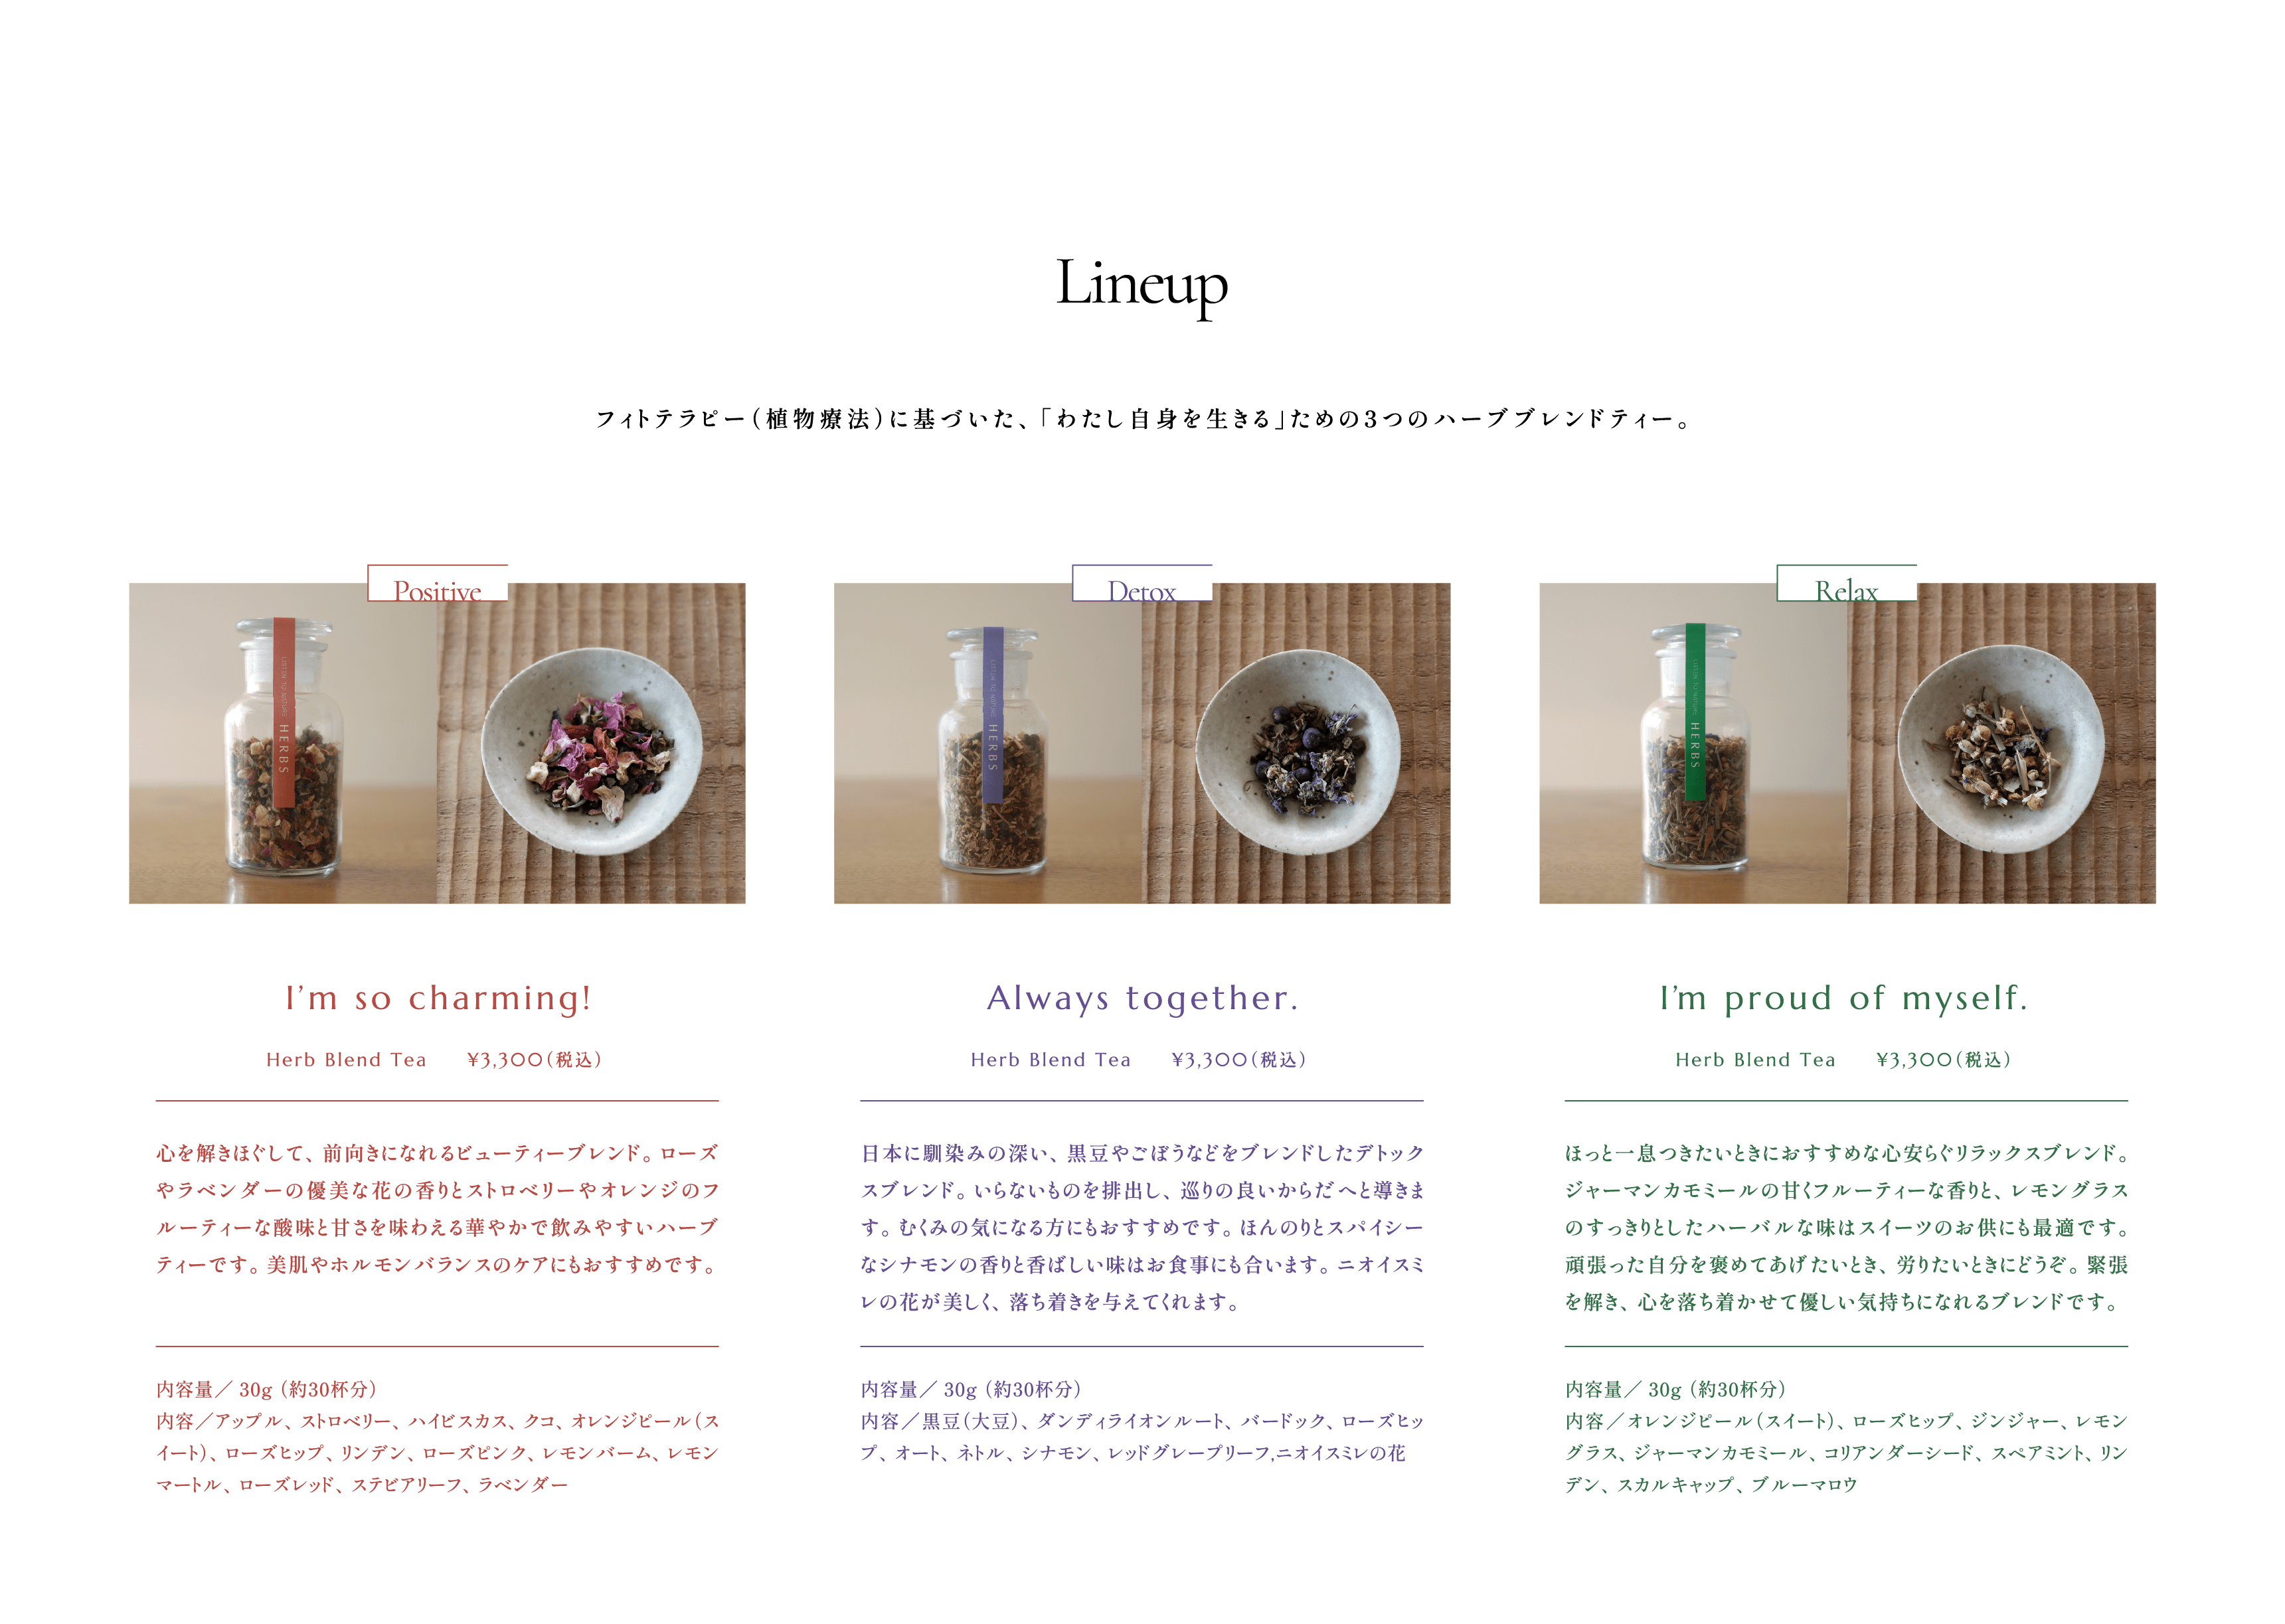 Lineup:フィトテラピー（植物療法）に基づいた、「わたし自身を生きる」ための3つのハーブブレンドティー。 Positive: I’m so charming!  Herb Blend Tea     ¥3,300（税込） 心を解きほぐして、前向きになれるビューティーブレンド。ローズやラベンダーの優美な花の香りとストロベリーやオレンジのフルーティーな酸味と甘さを味わえる華やかで飲みやすいハーブティーです。美肌やホルモンバランスのケアにもおすすめです。内容量／30g （約30杯分）内容／アップル、ストロベリー、ハイビスカス、クコ、オレンジピール（スイート）、ローズヒップ、リンデン、ローズピンク、レモンバーム、レモンマートル、ローズレッド、ステビアリーフ、ラベンダー  Detox:Always together. Herb Blend Tea     ¥3,300（税込） 日本に馴染みの深い、黒豆やごぼうなどをブレンドしたデトックスブレンド。いらないものを排出し、巡りの良いからだへと導きます。むくみの気になる方にもおすすめです。ほんのりとスパイシーなシナモンの香りと香ばしい味はお食事にも合います。ニオイスミレの花が美しく、落ち着きを与えてくれます。内容量／30g （約30杯分） 内容／黒豆（大豆）、ダンディライオンルート、バードック、ローズヒップ、オート、ネトル、シナモン、レッドグレープリーフ,ニオイスミレの花  Relax:I’m proud of myself.  Herb Blend Tea     ¥3,300（税込） ほっと一息つきたいときにおすすめな心安らぐリラックスブレンド。ジャーマンカモミールの甘くフルーティーな香りと、レモングラスのすっきりとしたハーバルな味はスイーツのお供にも最適です。頑張った自分を褒めてあげたいとき、労りたいときにどうぞ。緊張を解き、心を落ち着かせて優しい気持ちになれるブレンドです。内容量／30g （約30杯分）内容／オレンジピール（スイート）、ローズヒップ、ジンジャー、レモングラス、ジャーマンカモミール、コリアンダーシード、スペアミント、リンデン、スカルキャップ、ブルーマロウ